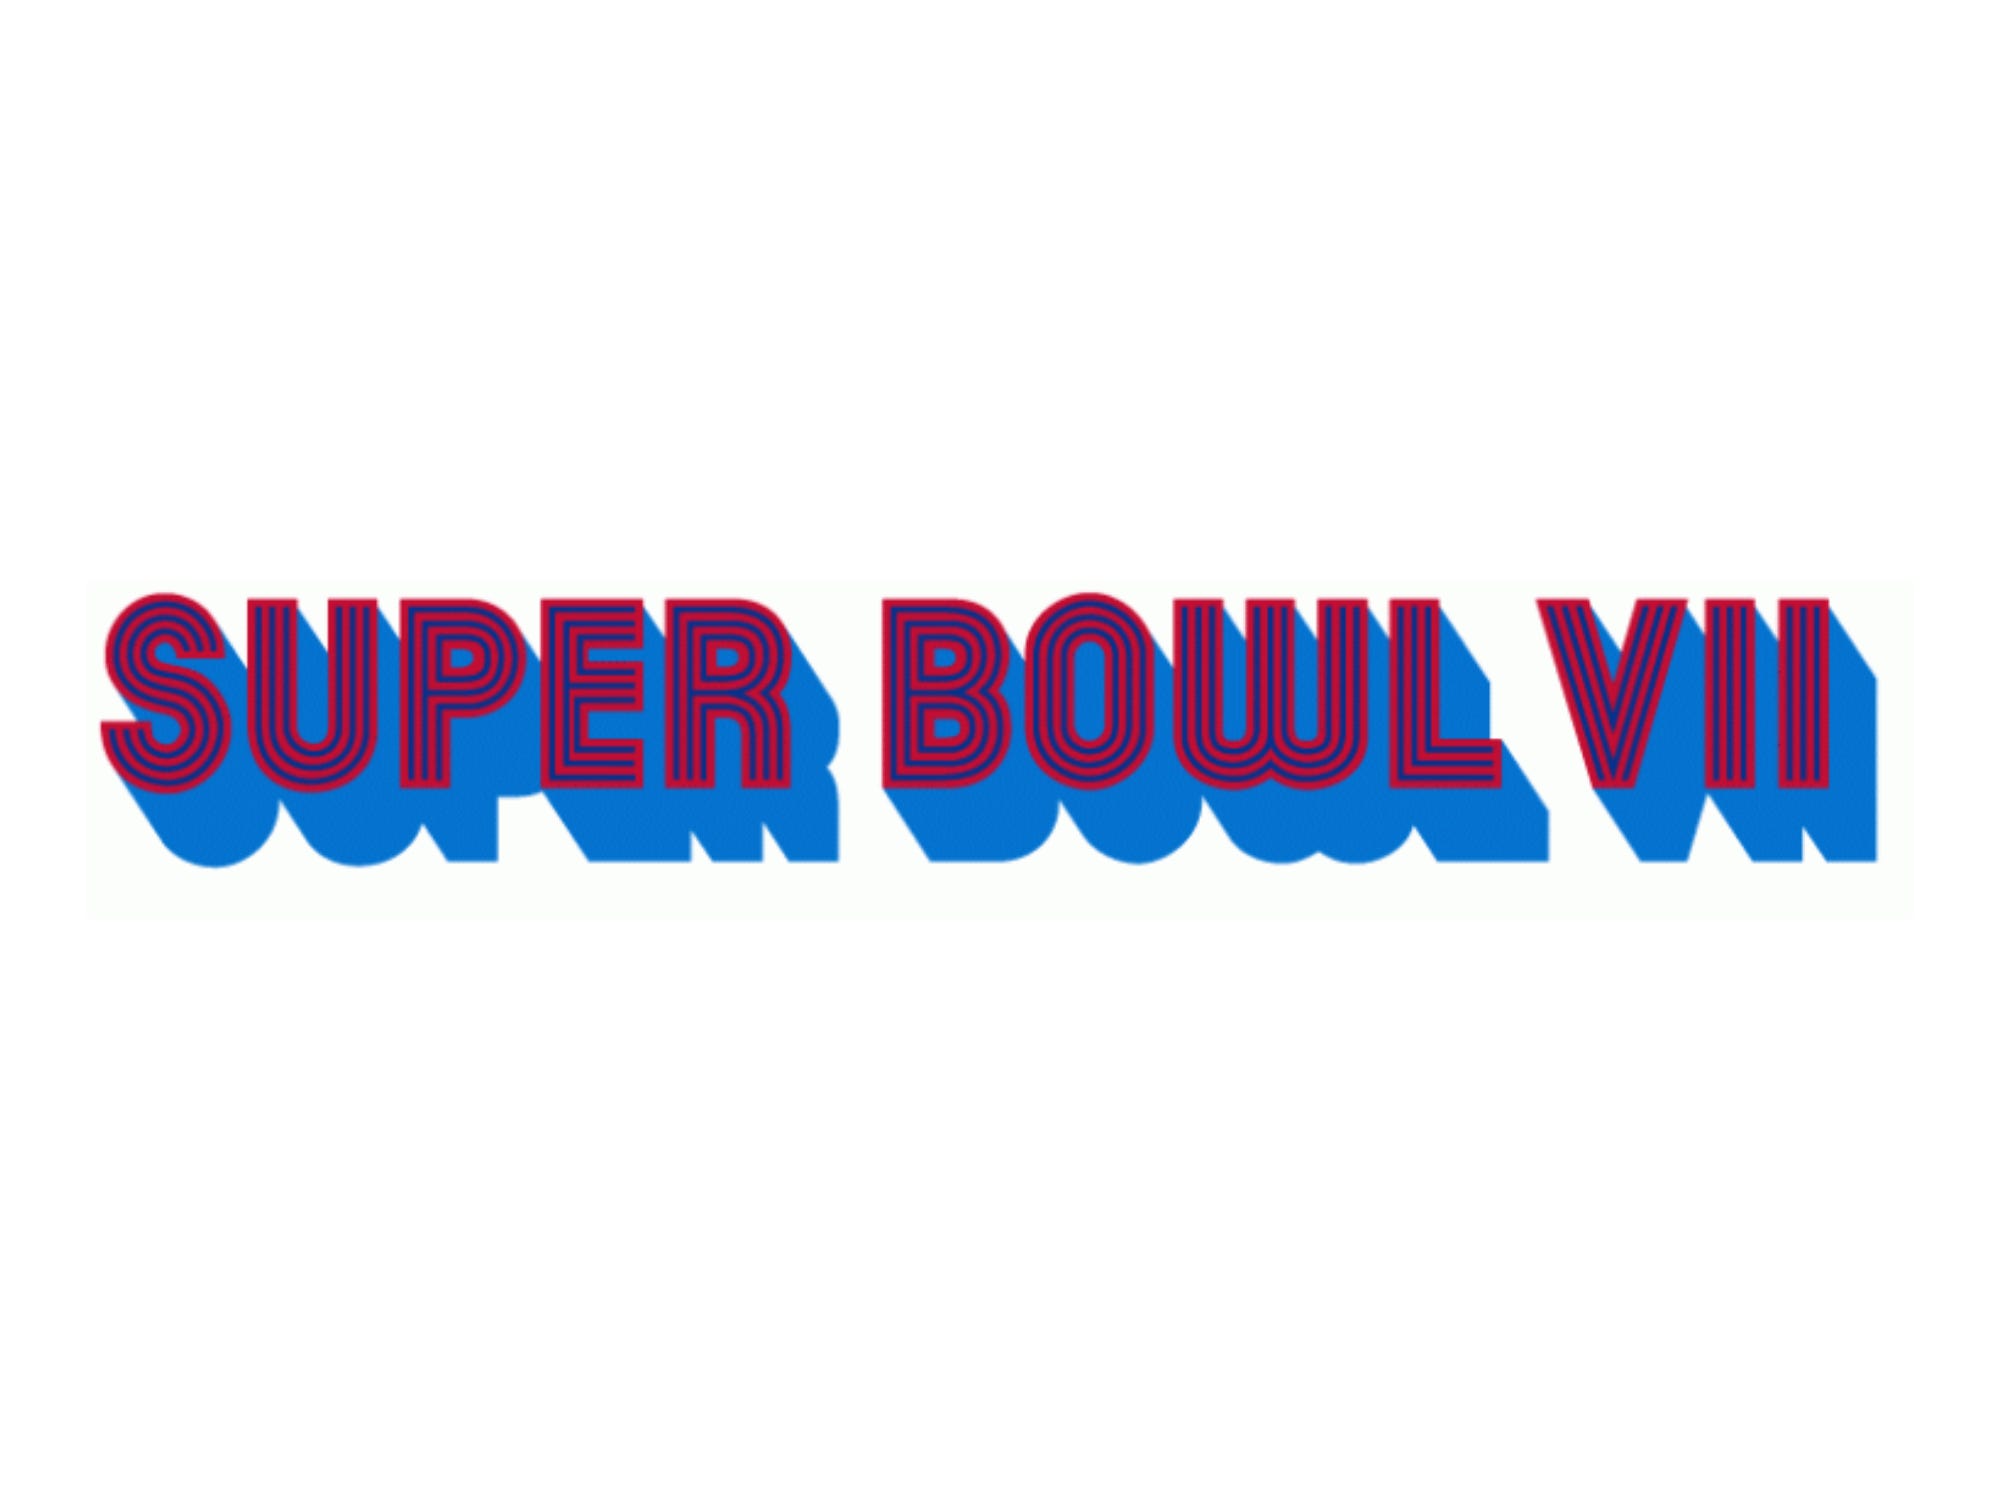 Super Bowl VII